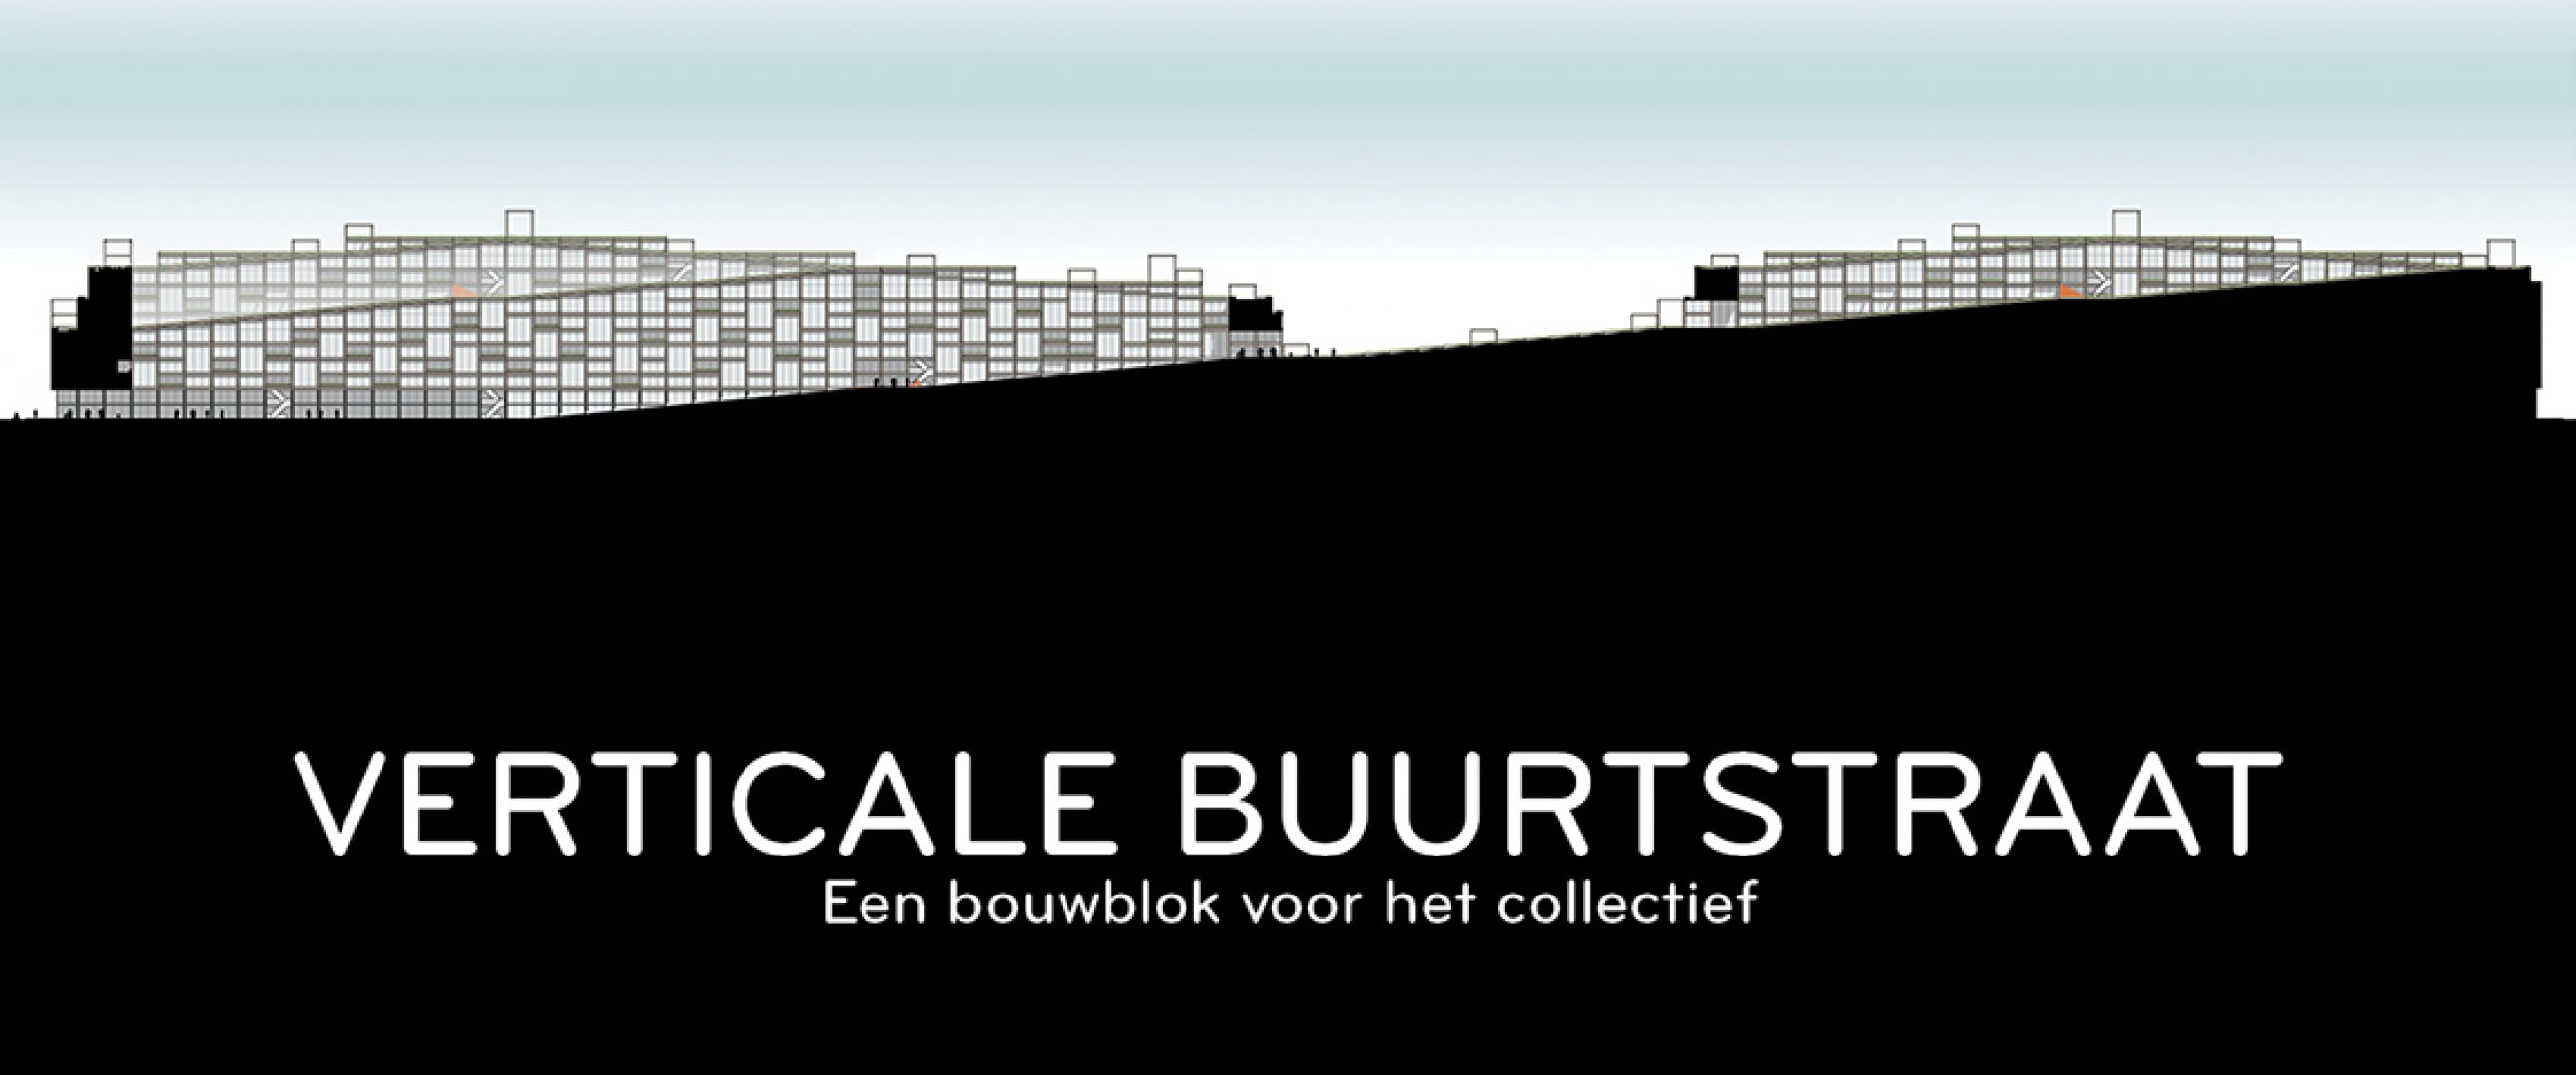 Verticale Buurtstraat, een bouwblok voor het collectief